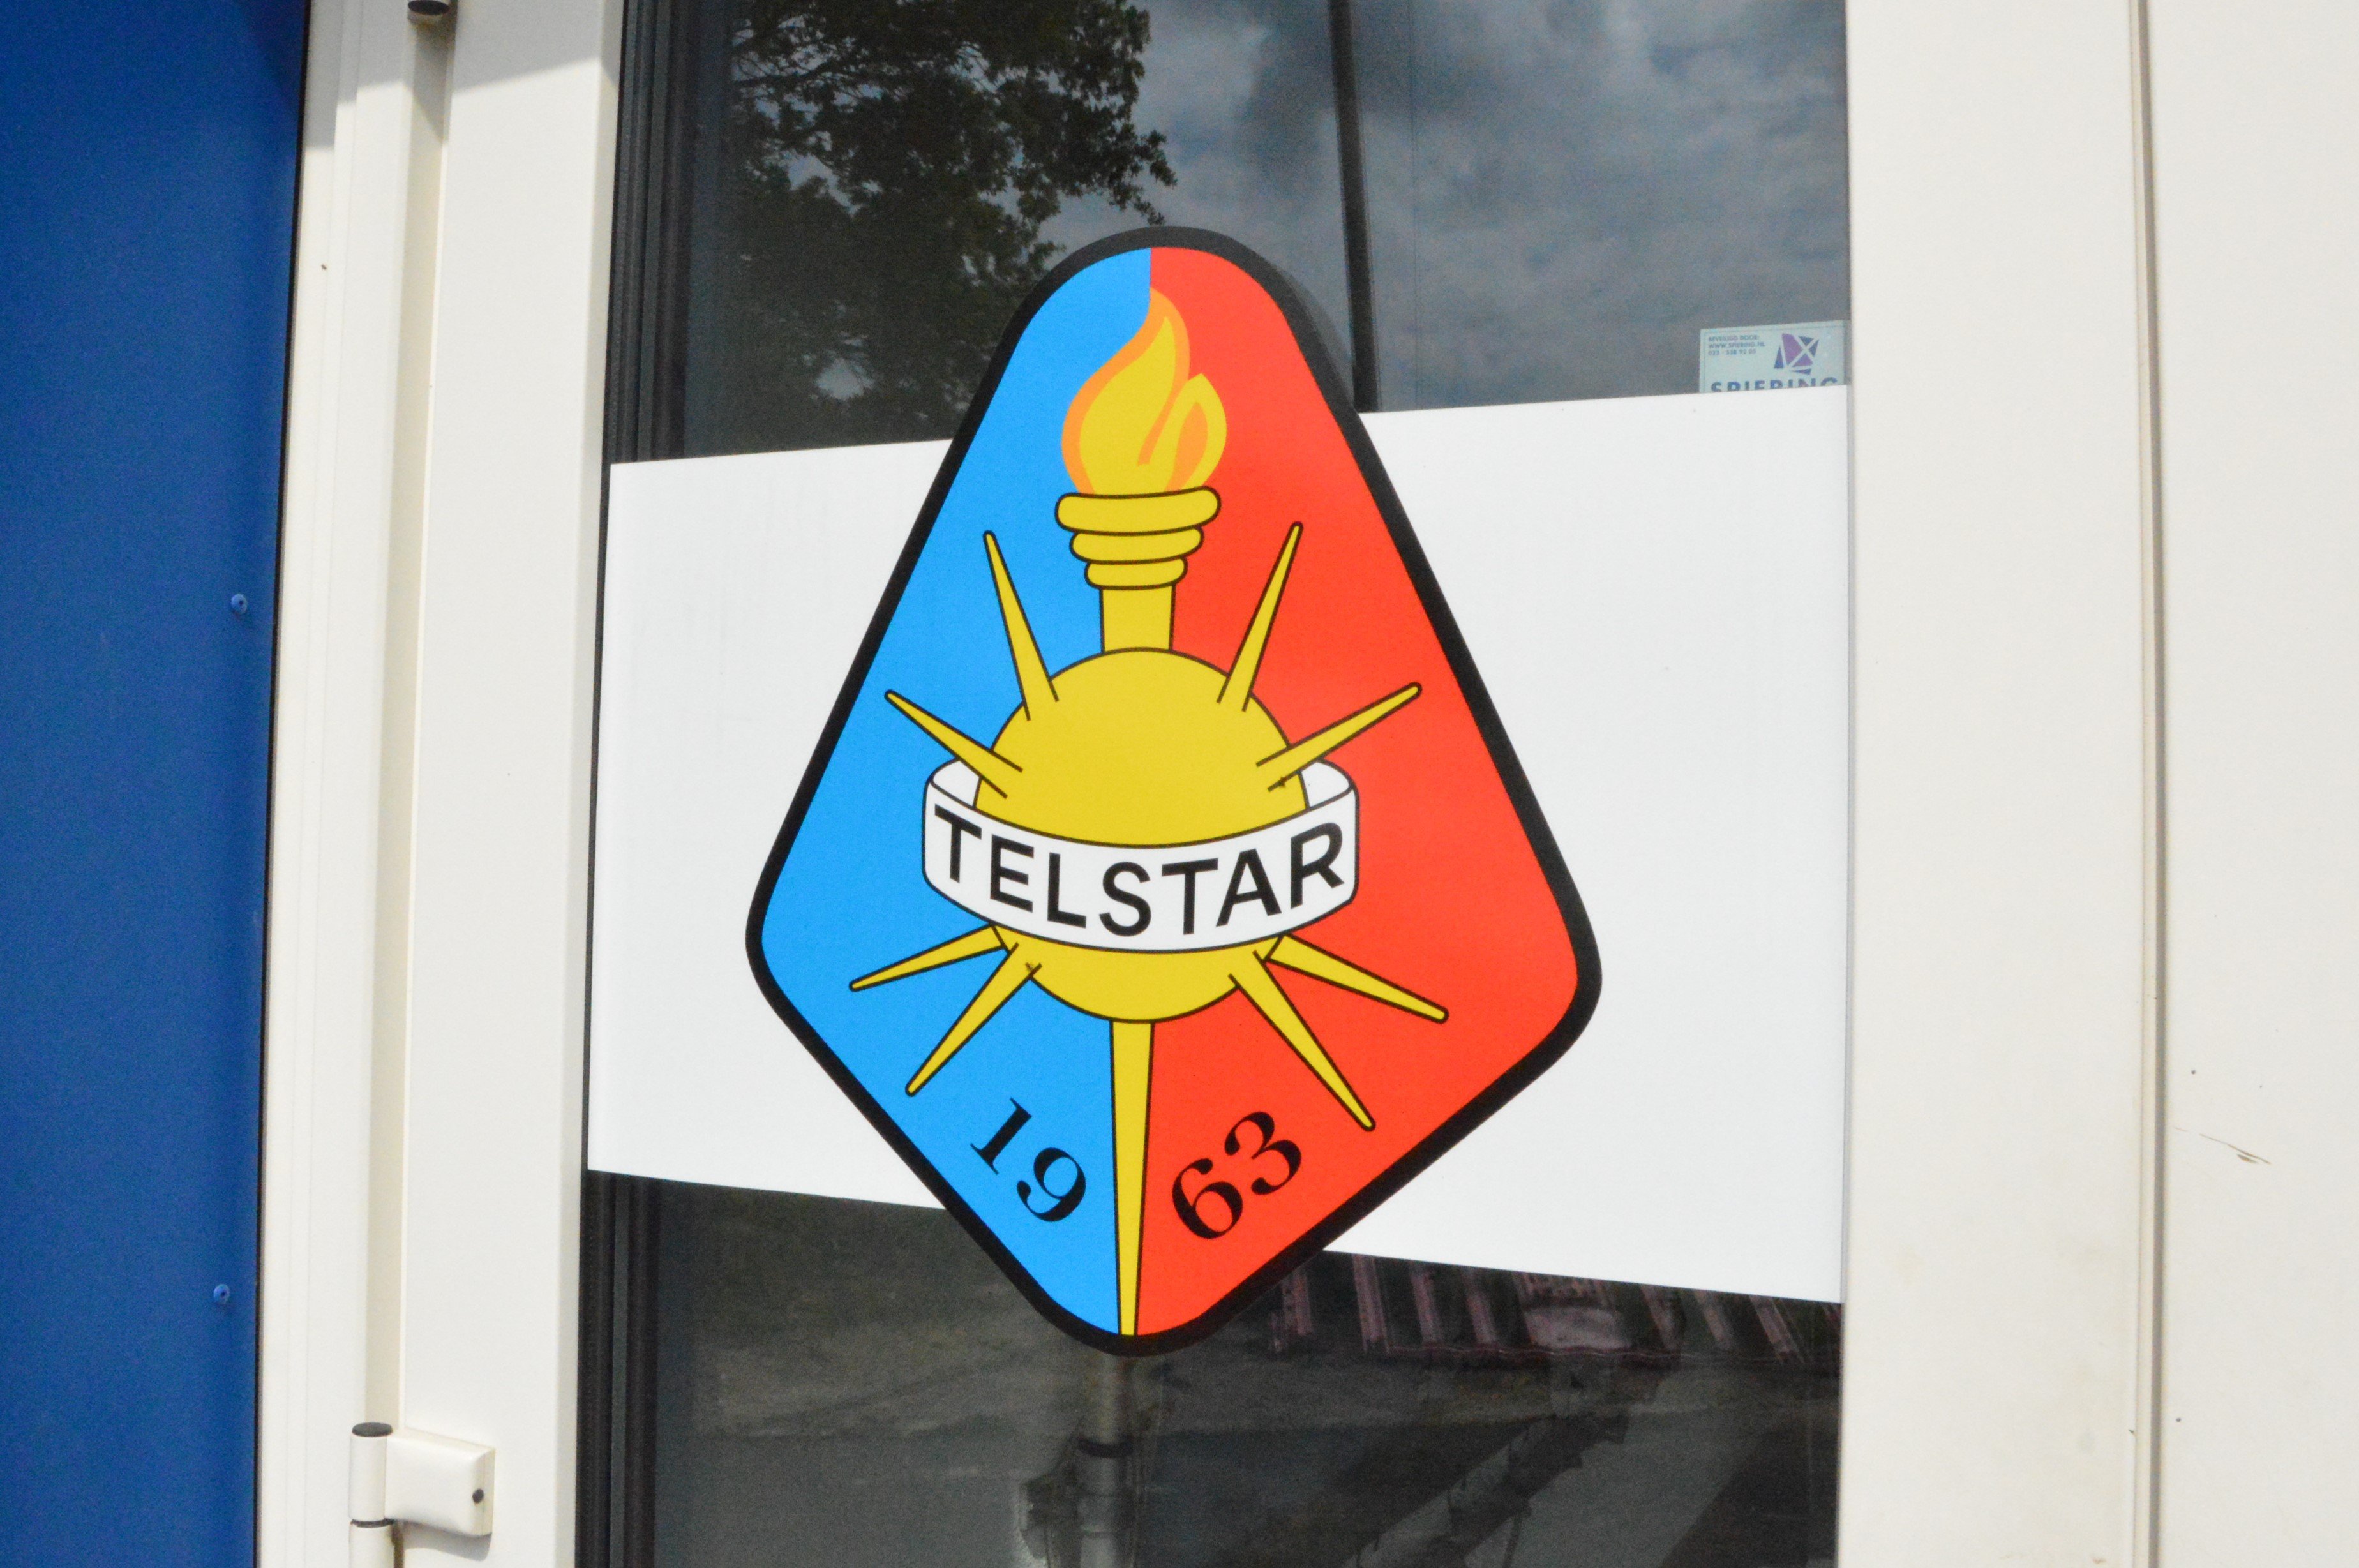 Telstar - Voetbal in Haarlem